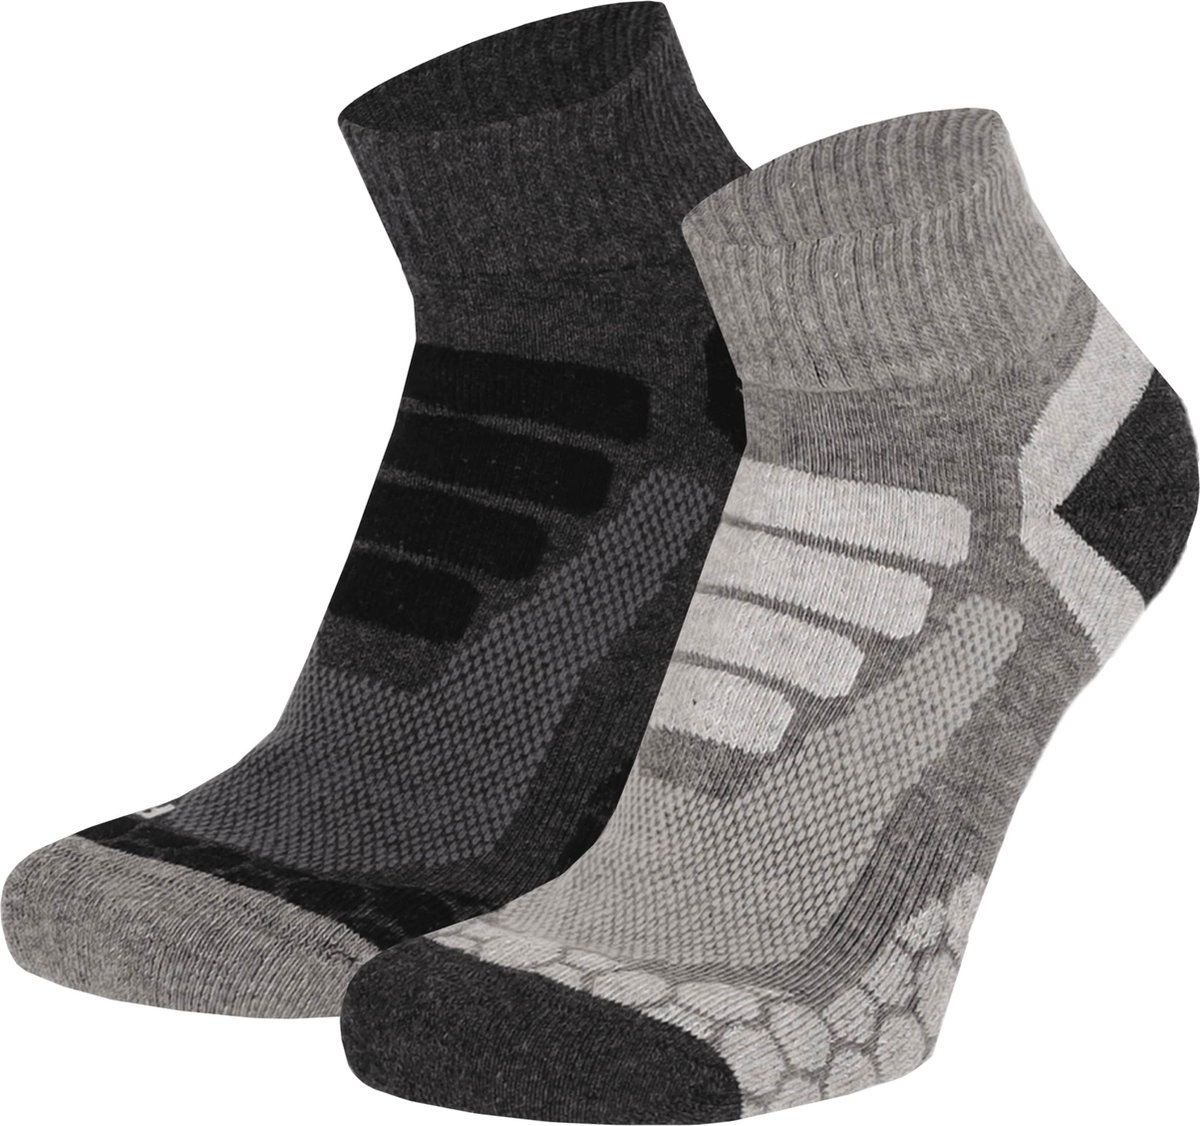 Xtreme Wandelsokken Quarter - Lage hiking sokken - 2-pack - Multi Grey - Maat 39/42